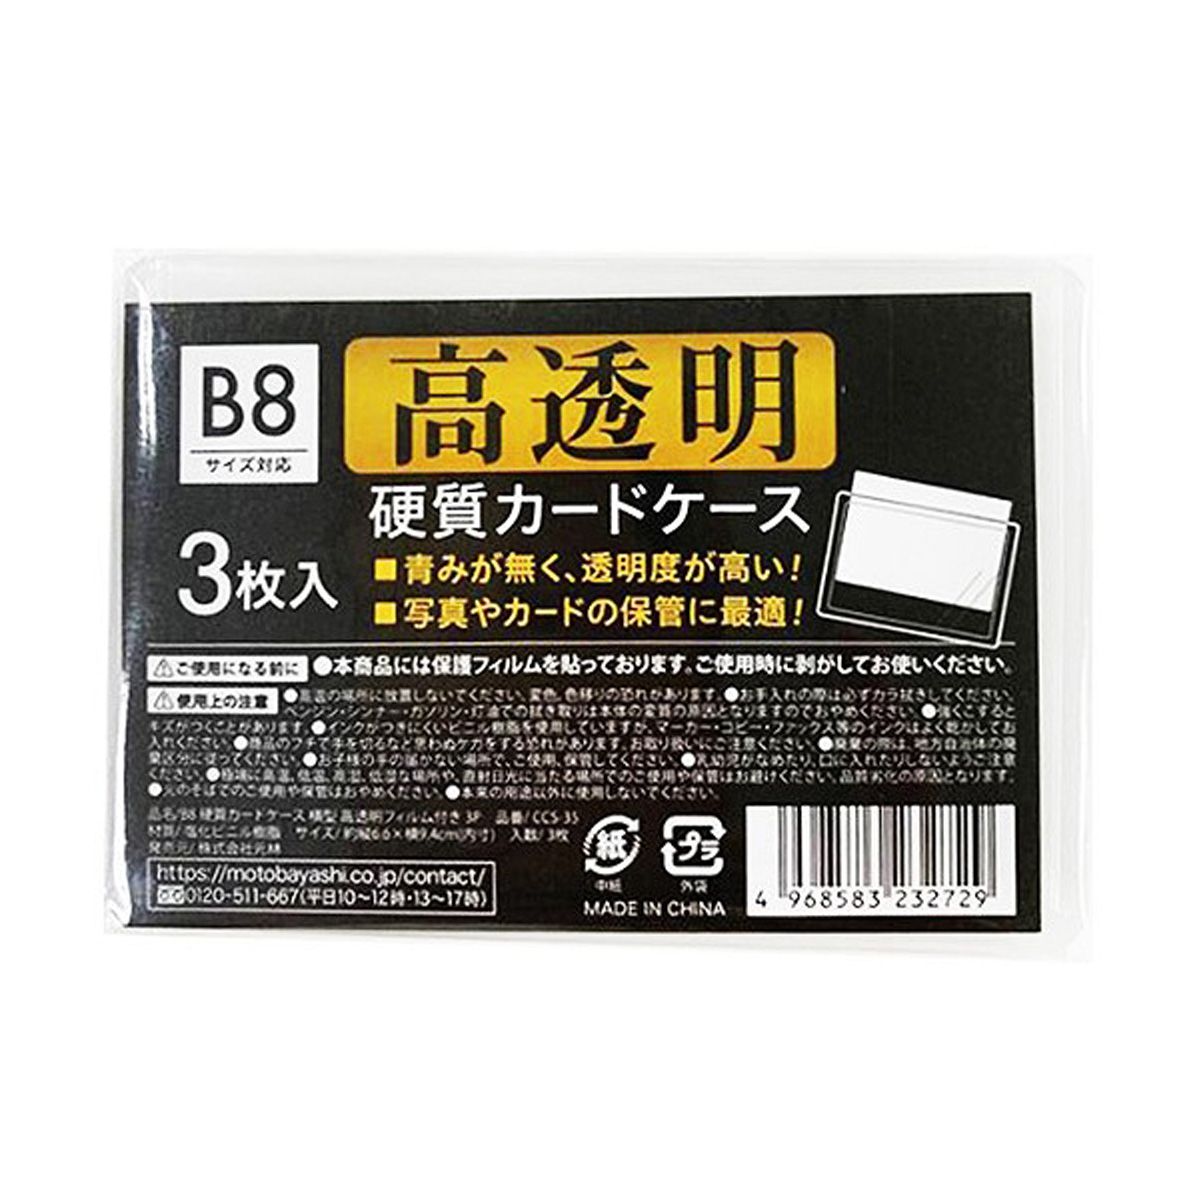 B8硬質カードケース高透明フィルム付3P 0948/352131